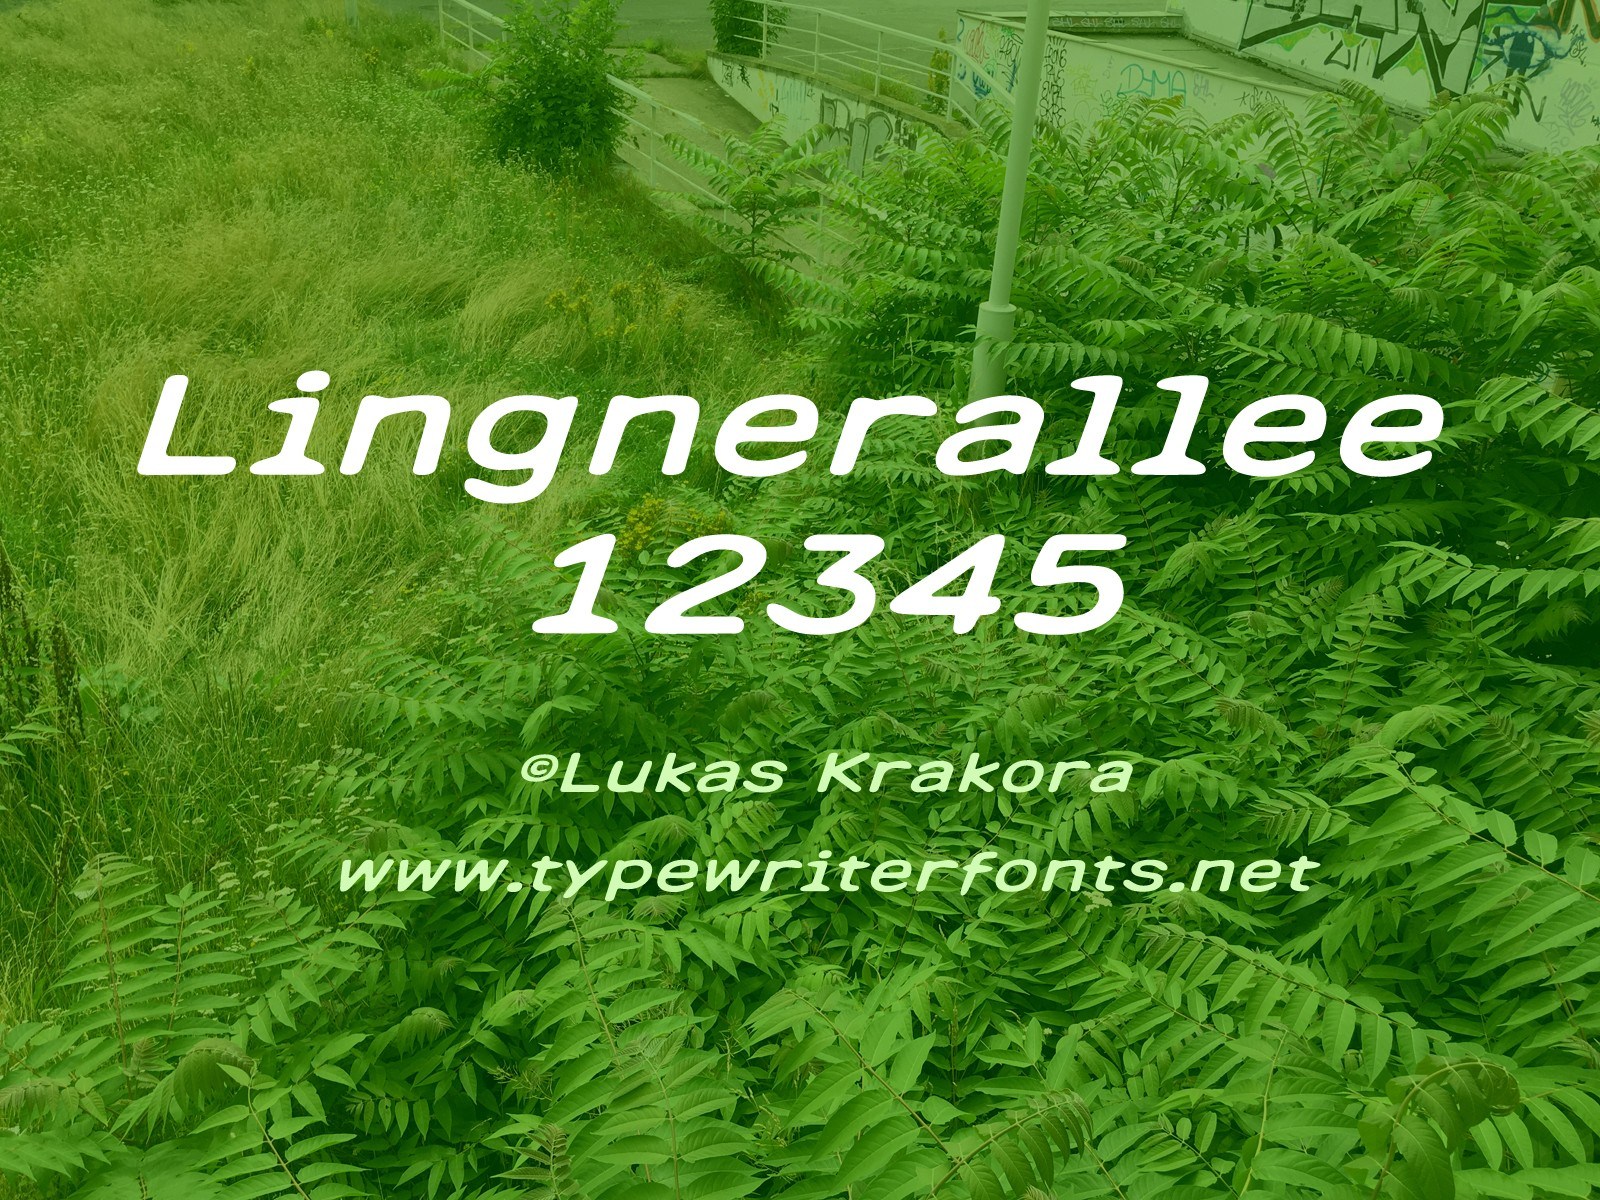 Lingnerallee 12345